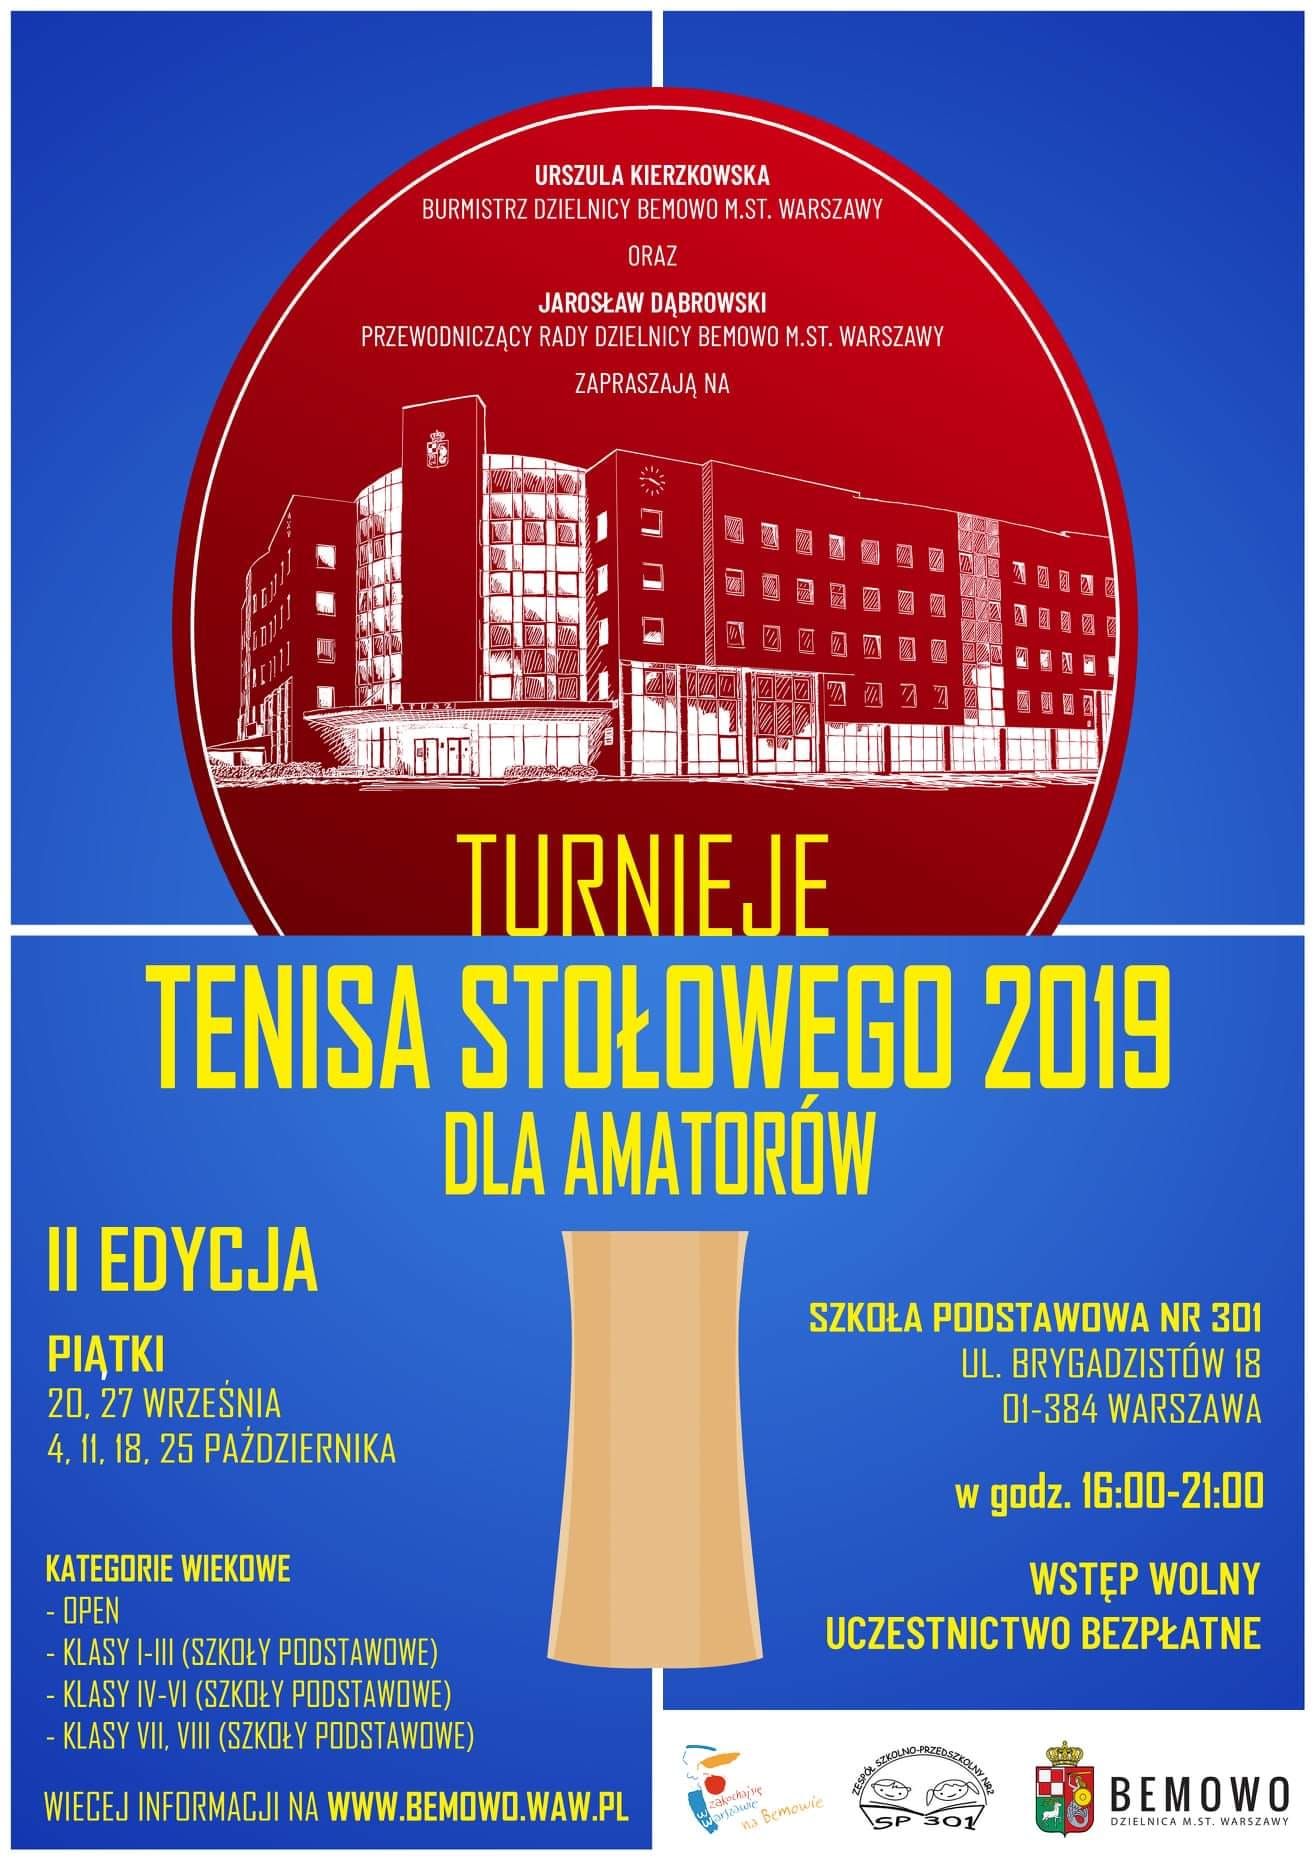 Plakat turnieju Turnieje tenisa stołowego Bemowo - Brygadzistów (4 października 2019) - II EDYCJA